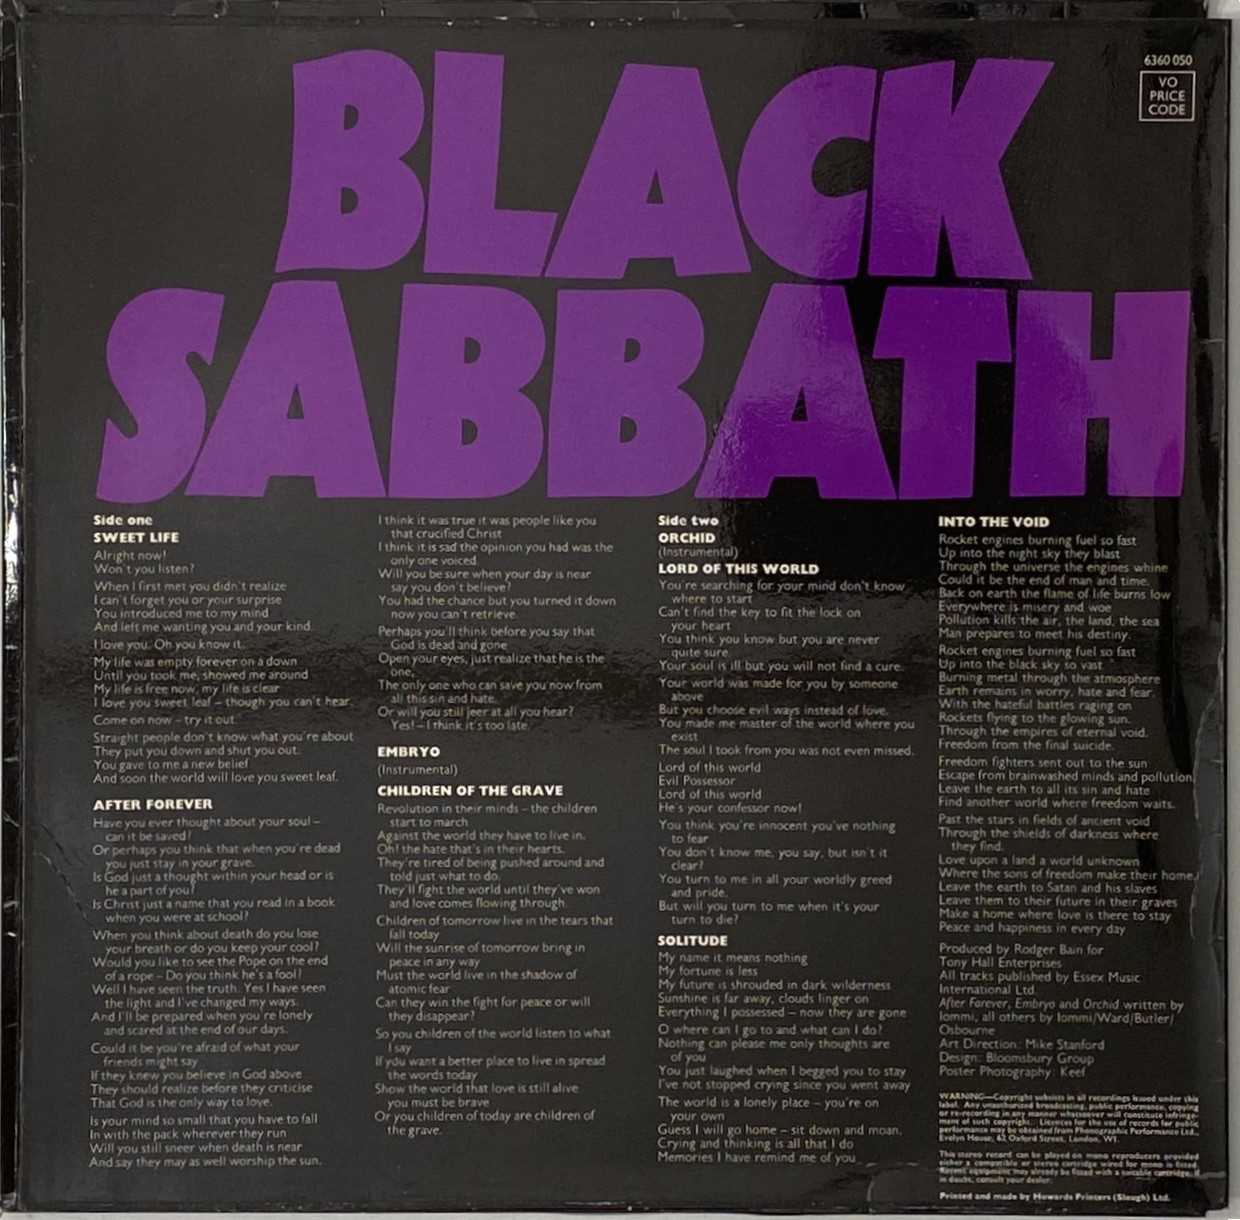 BLACK SABBATH - MASTER OF REALITY LP (ORIGINAL UK COPY COMPLETE WITH POSTER - VERTIGO 6360 050) - Image 4 of 6